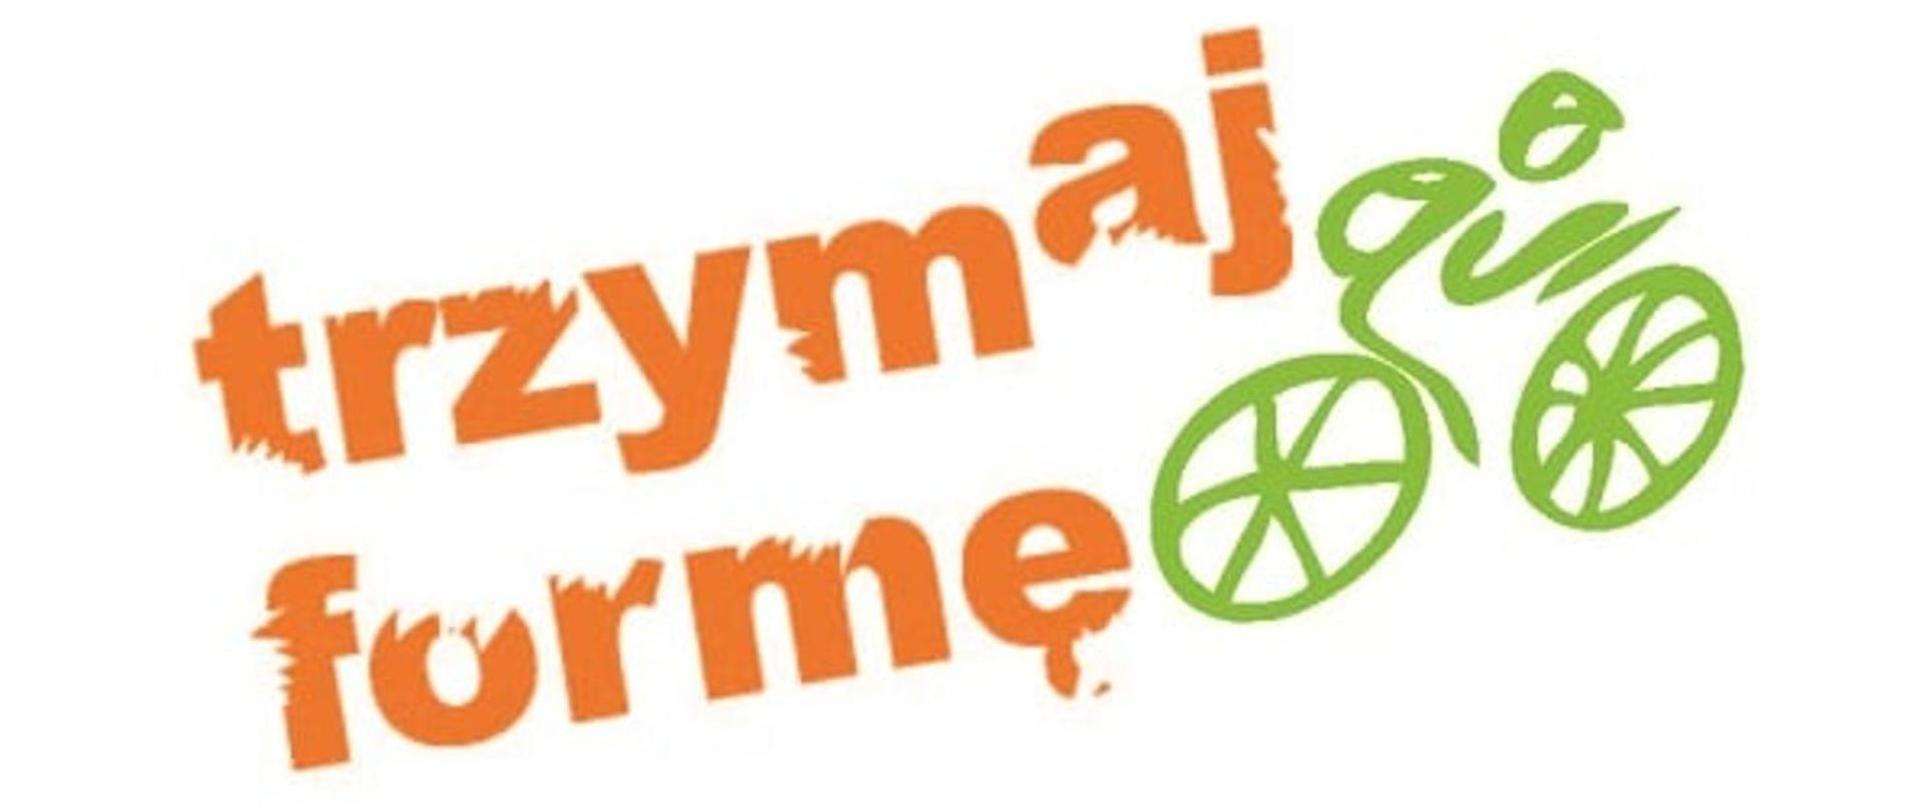 Zdjęcie przedstawia napis trzymaj formę w kolorze pomarańczowym oraz zielona grafikę- rowerzystę.